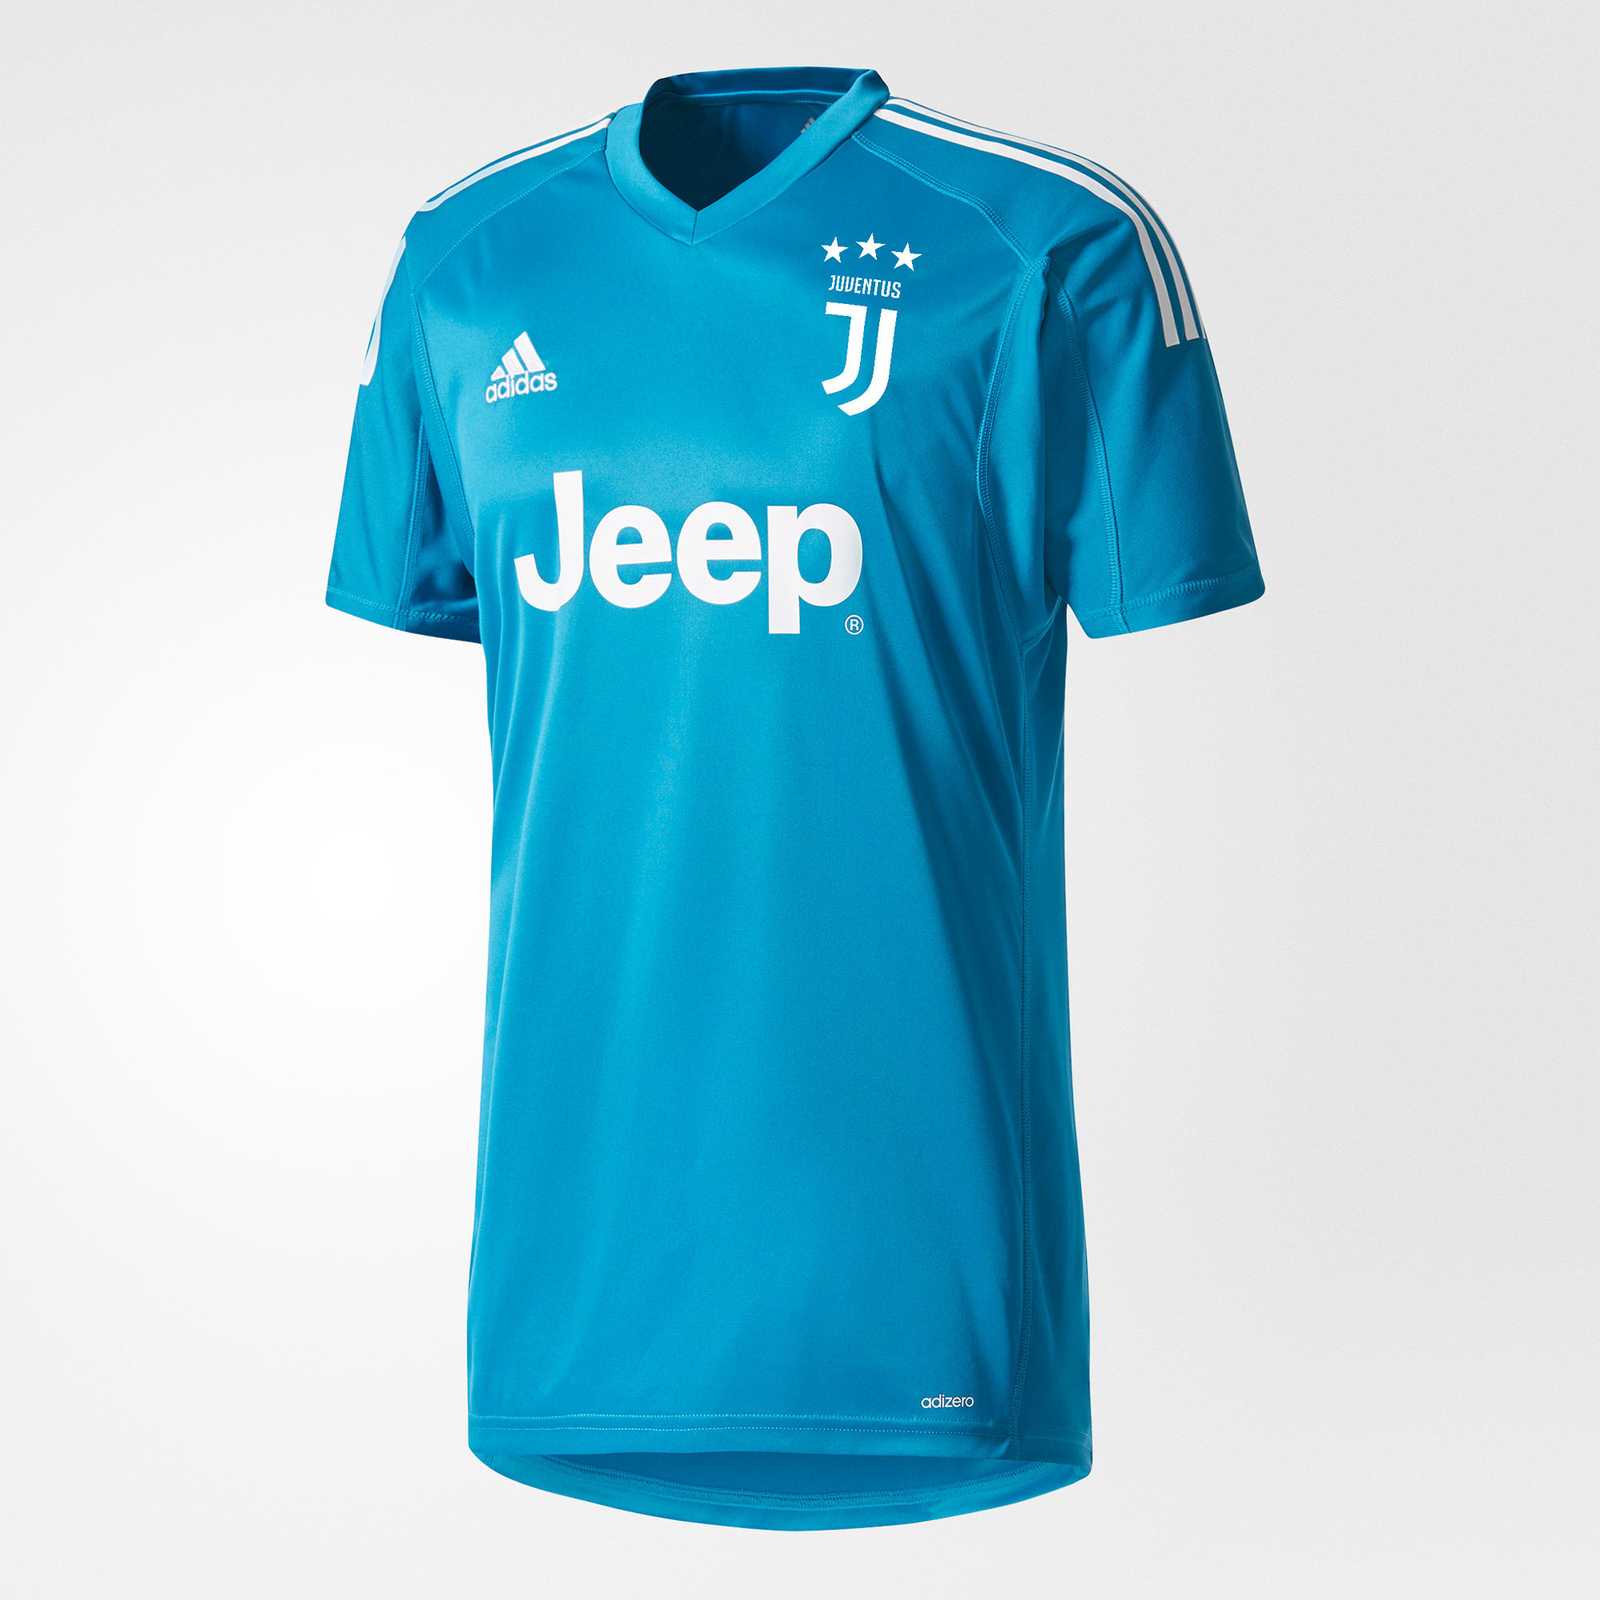 Juventus 17-18 Goalkeeper Kit Released - Footy Headlines